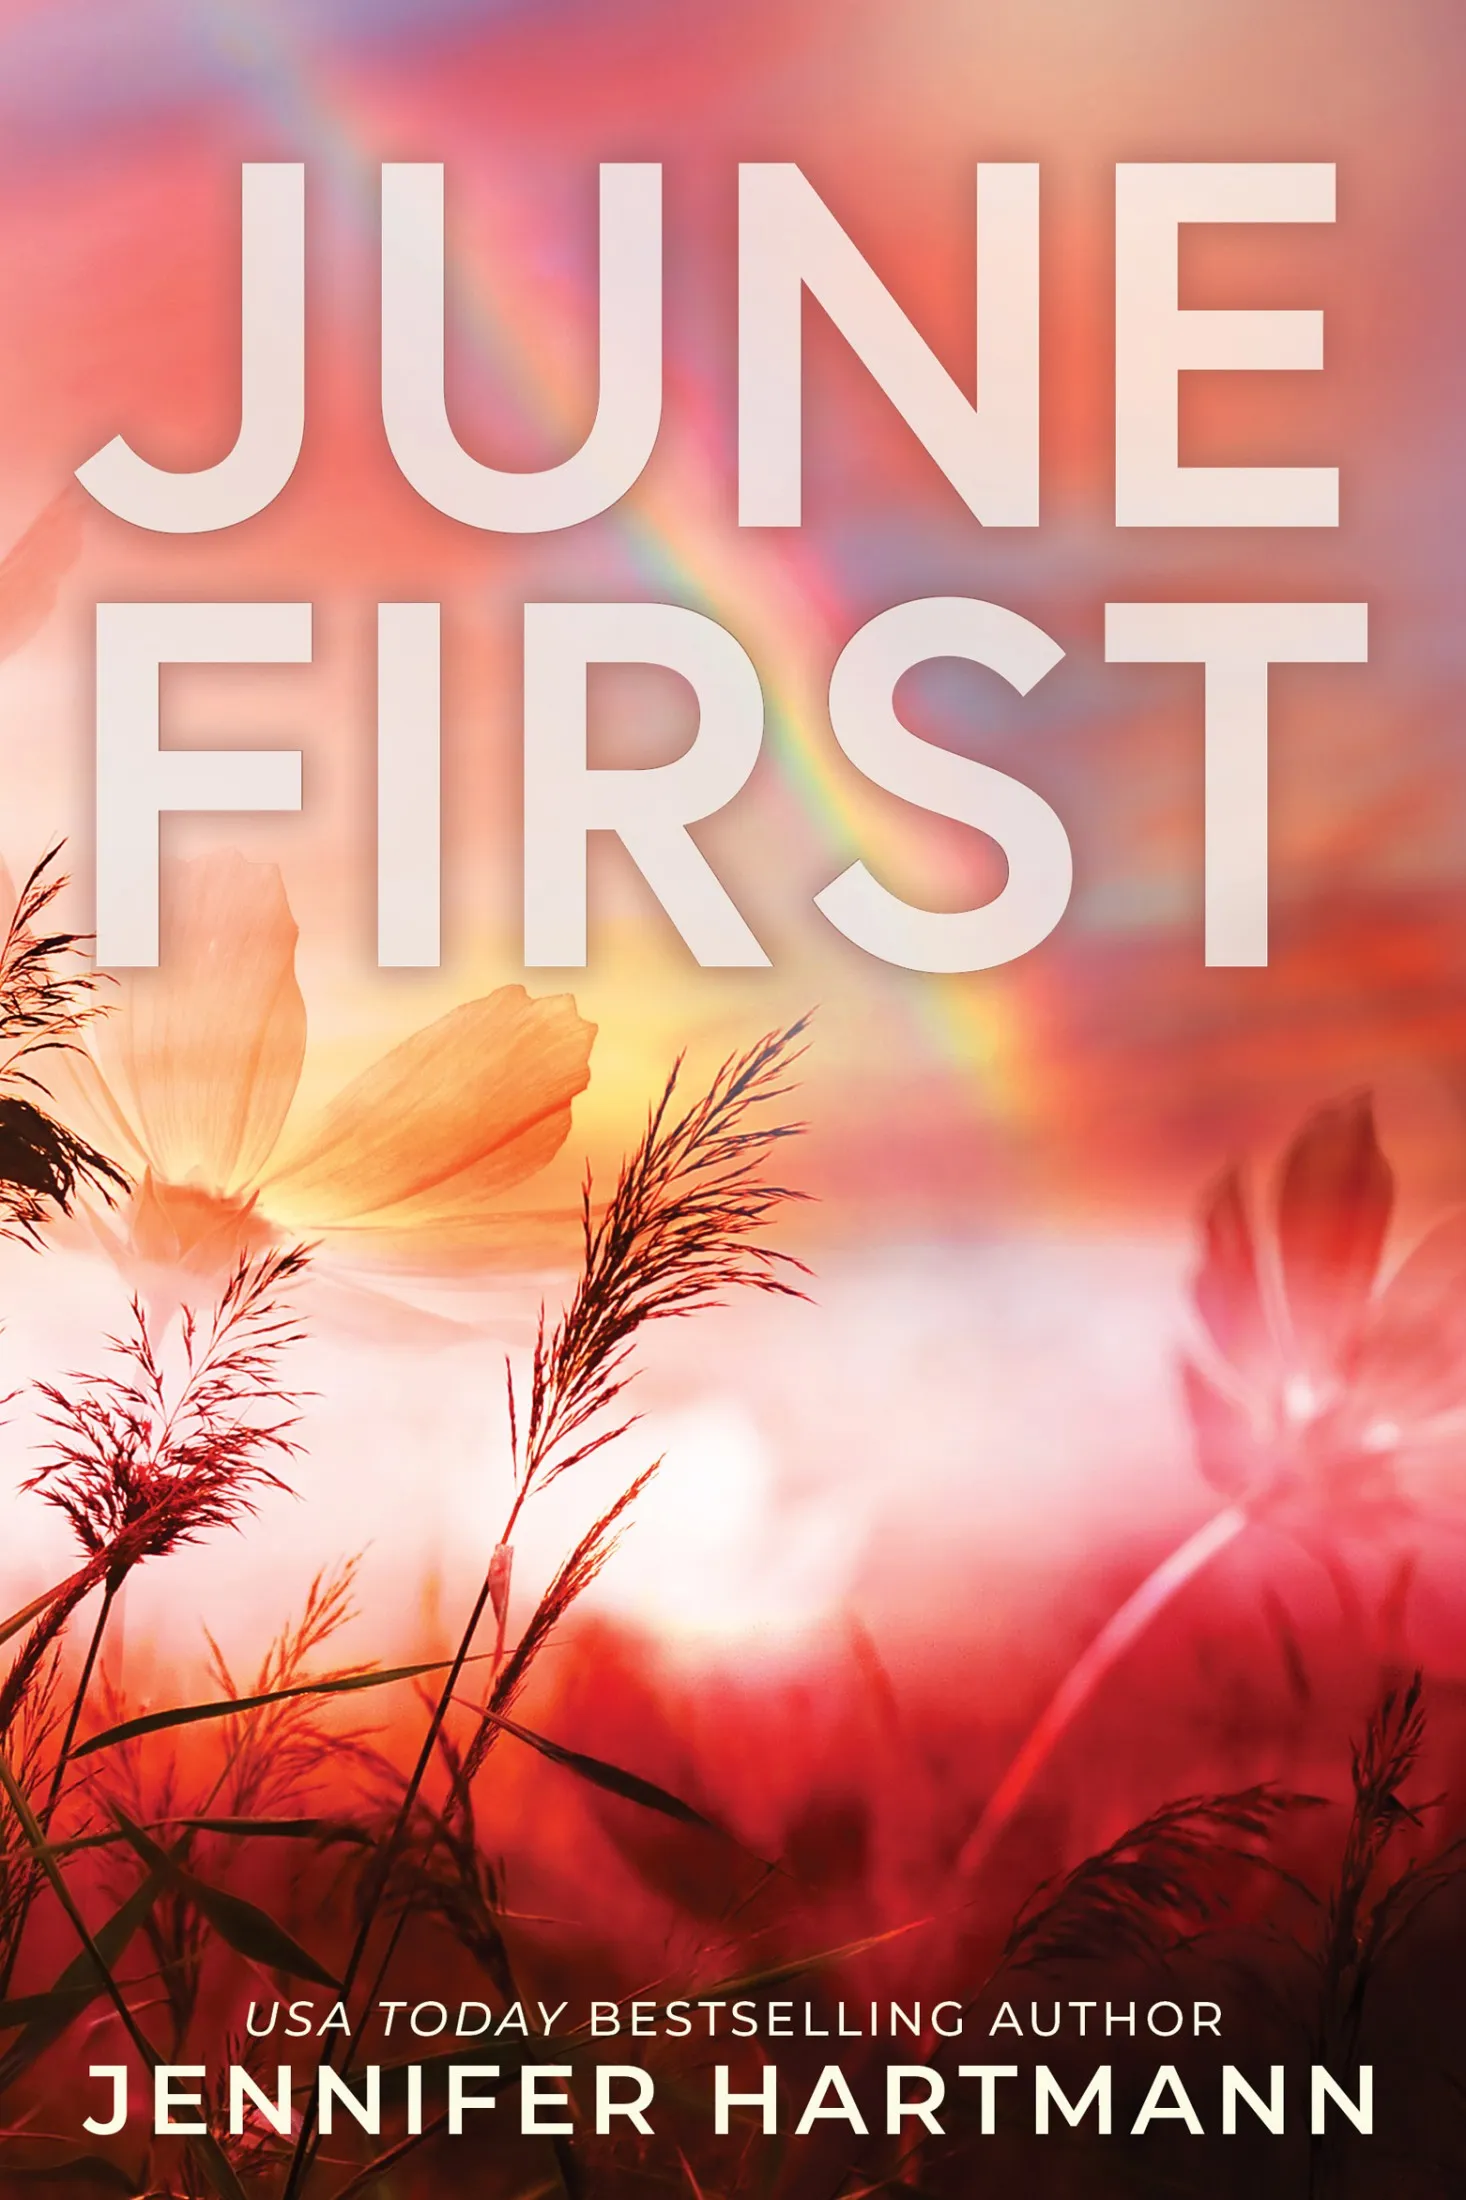 June First